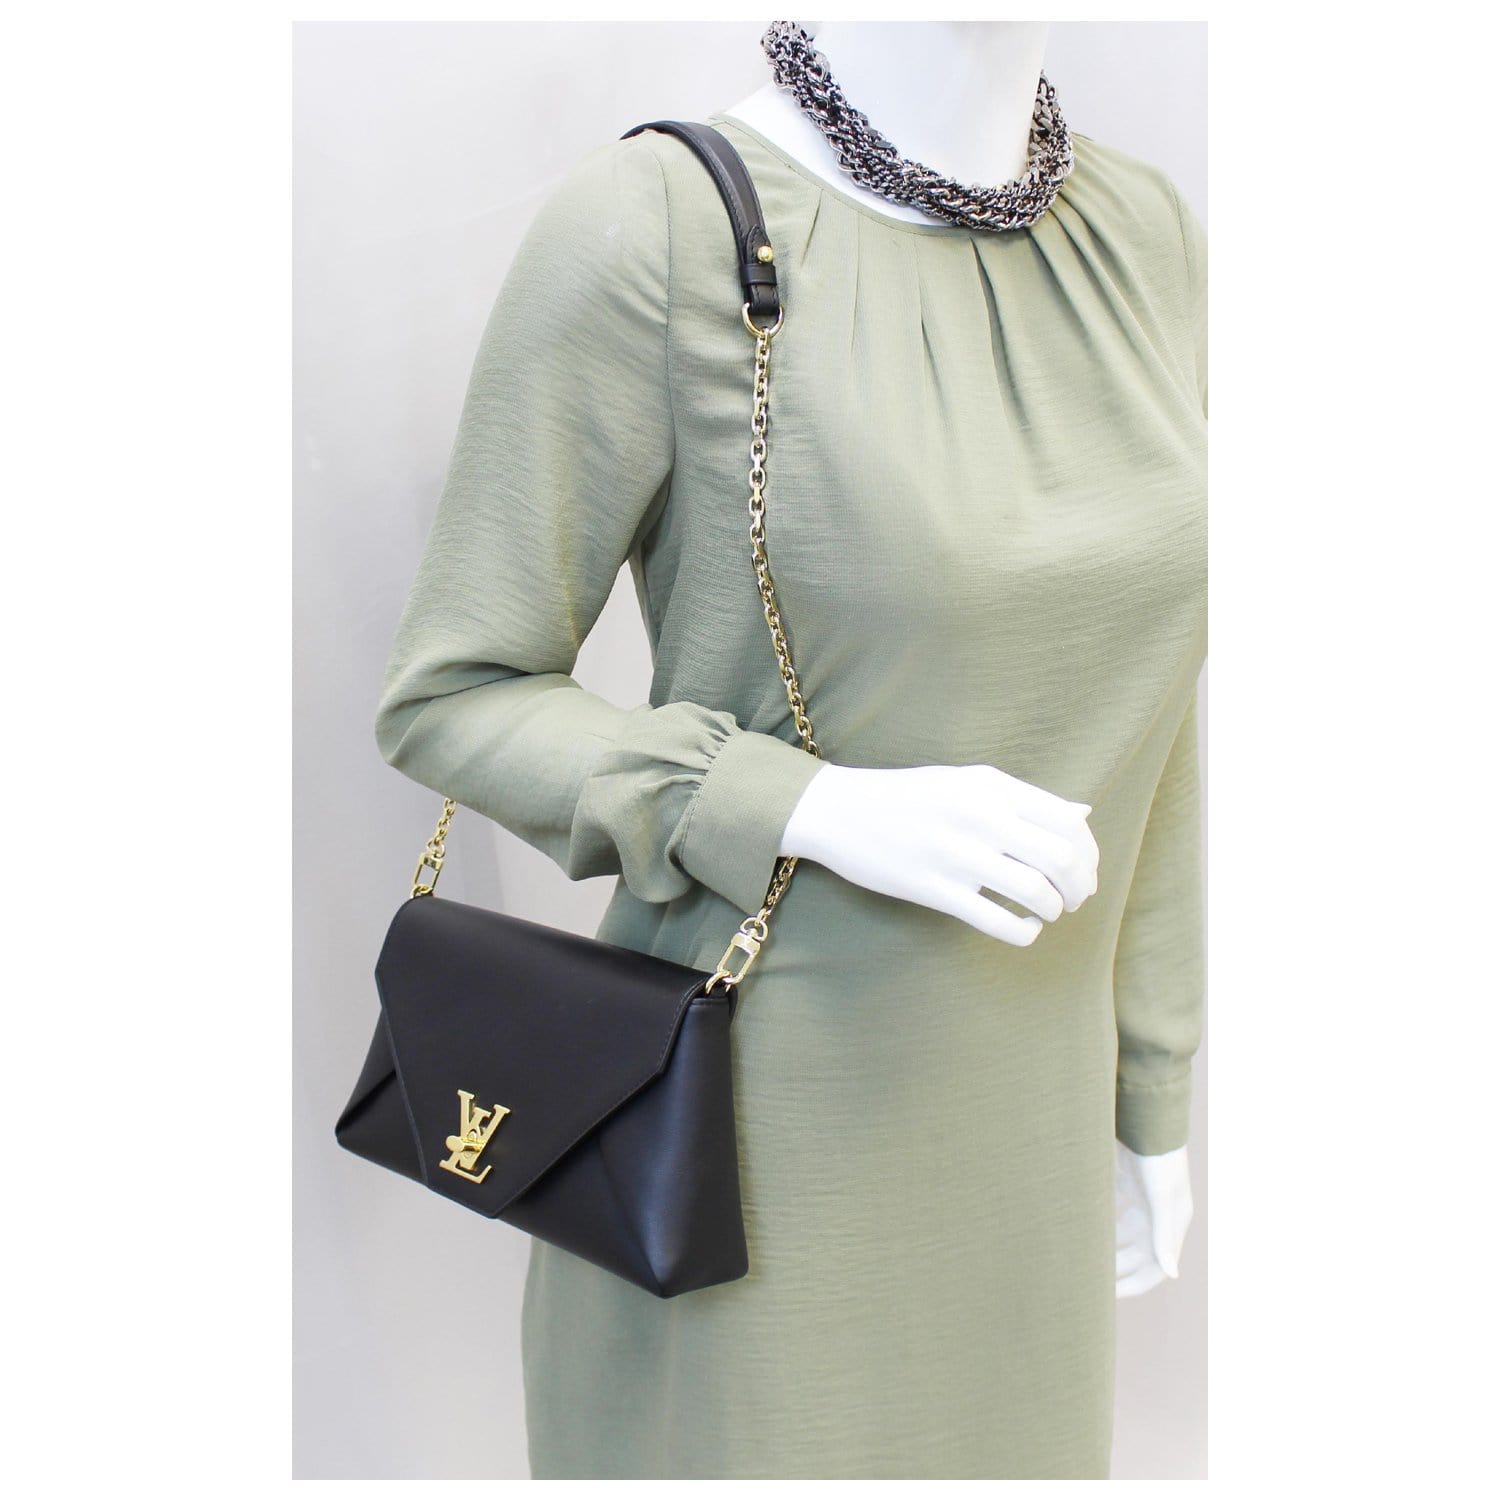 Louis Vuitton Love Note Small Shoulder Bag